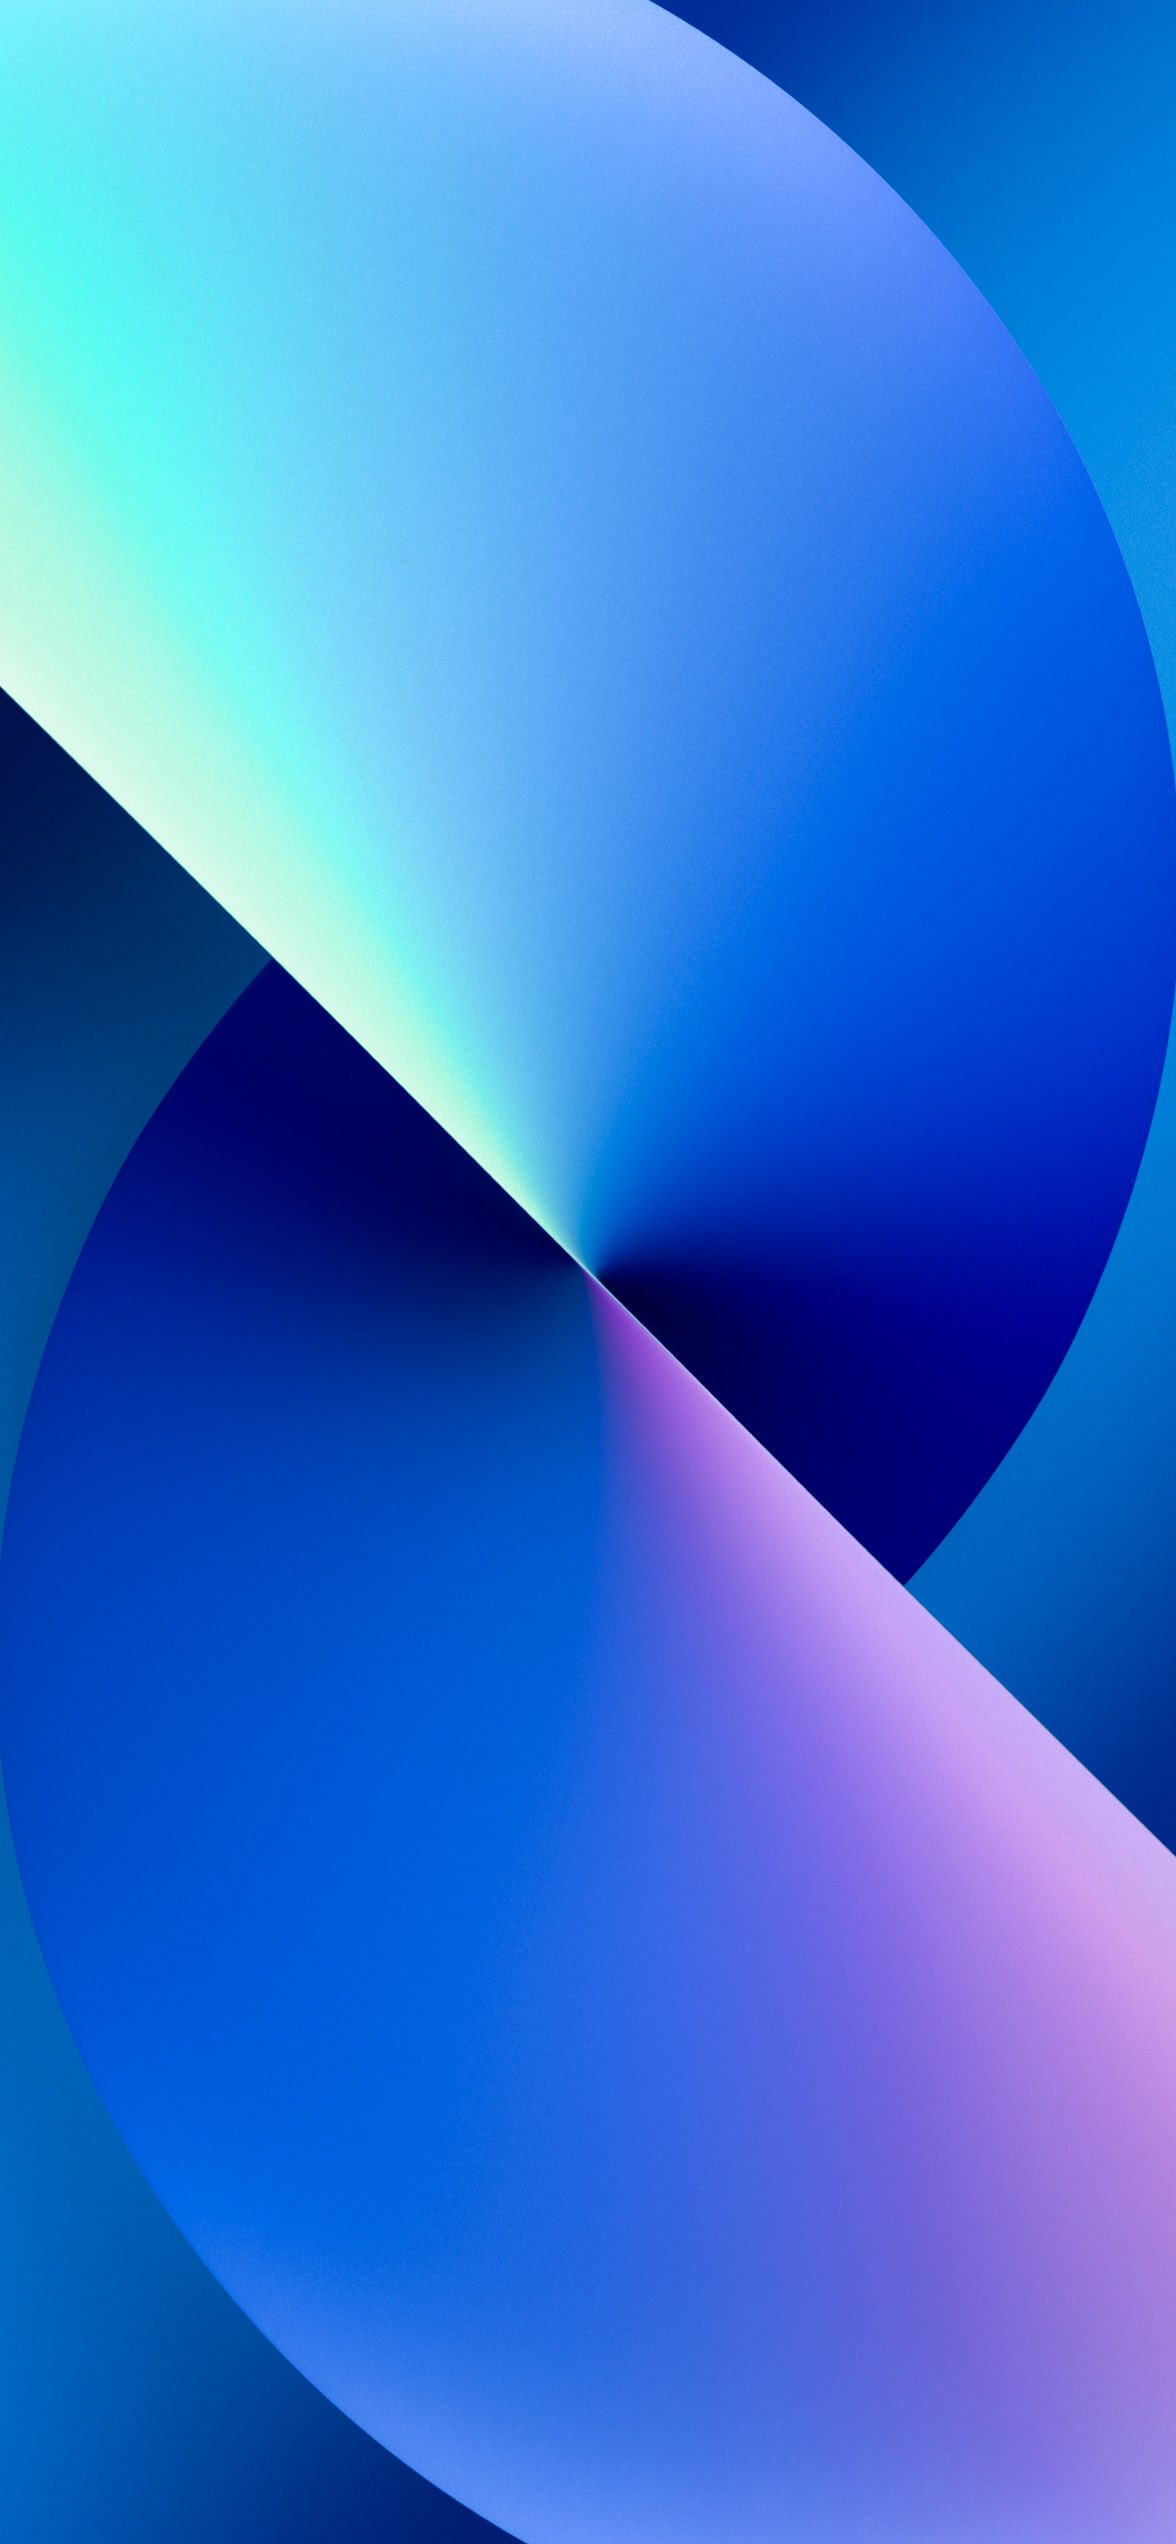 Hình nền 3D đẹp cho iPhone 13 với sắc xanh coban chủ đạo